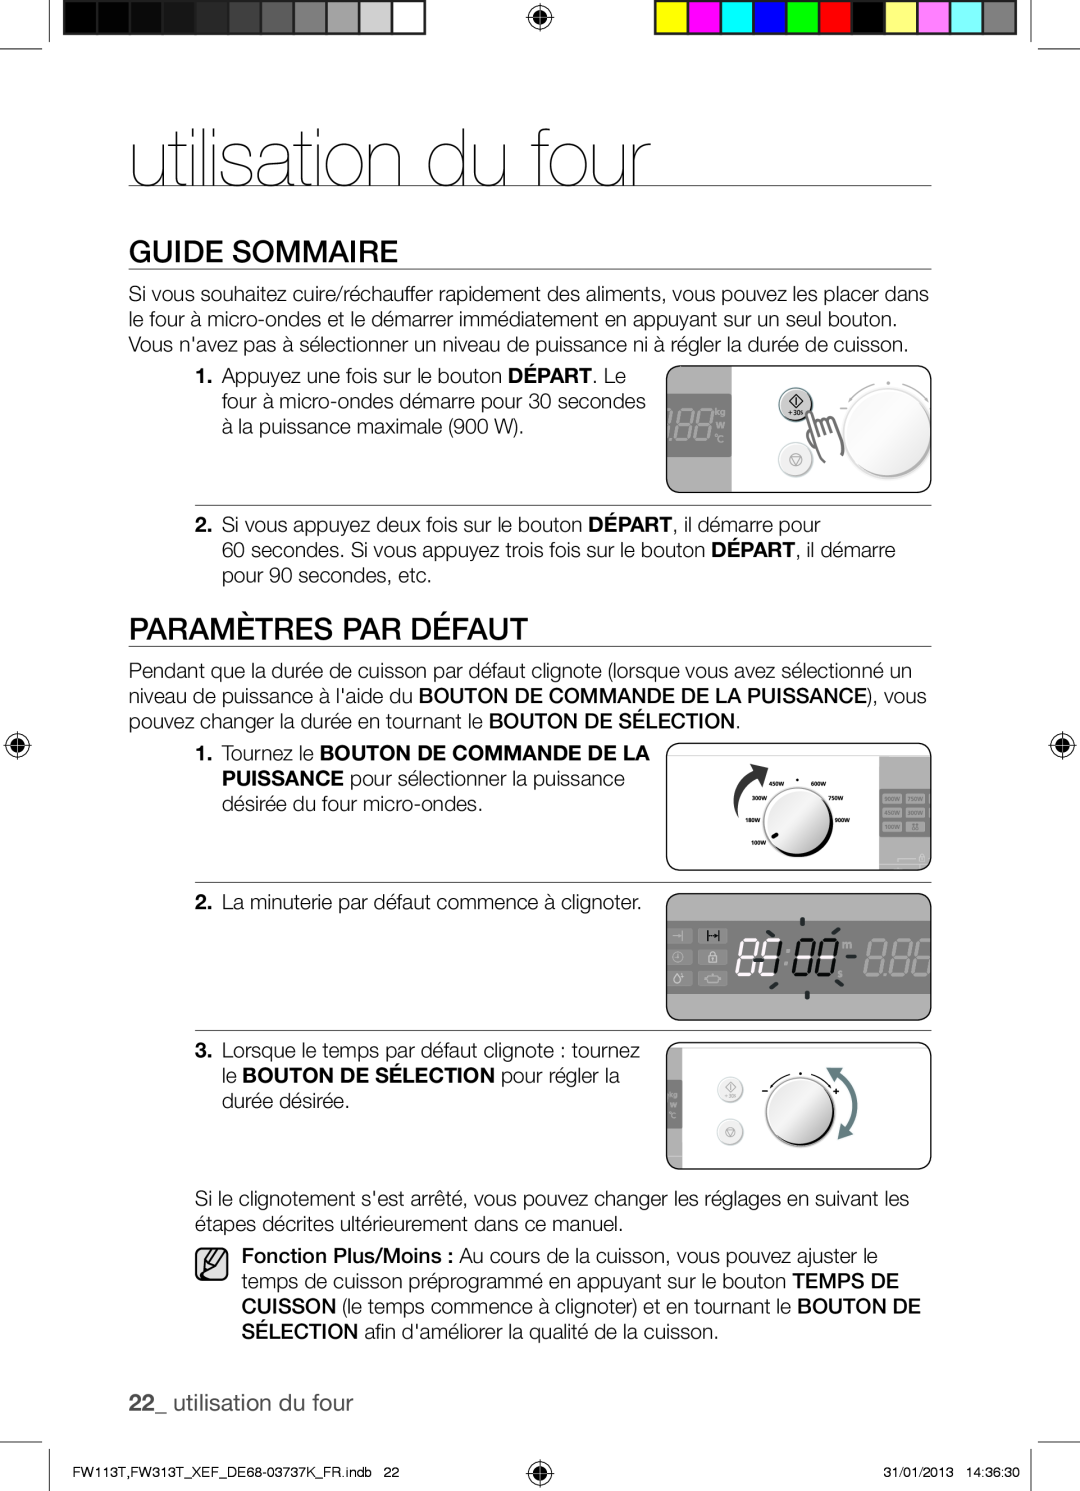 Samsung FW113T002/XEF manual utilisation du four, Guide Sommaire, Paramètres Par Défaut 